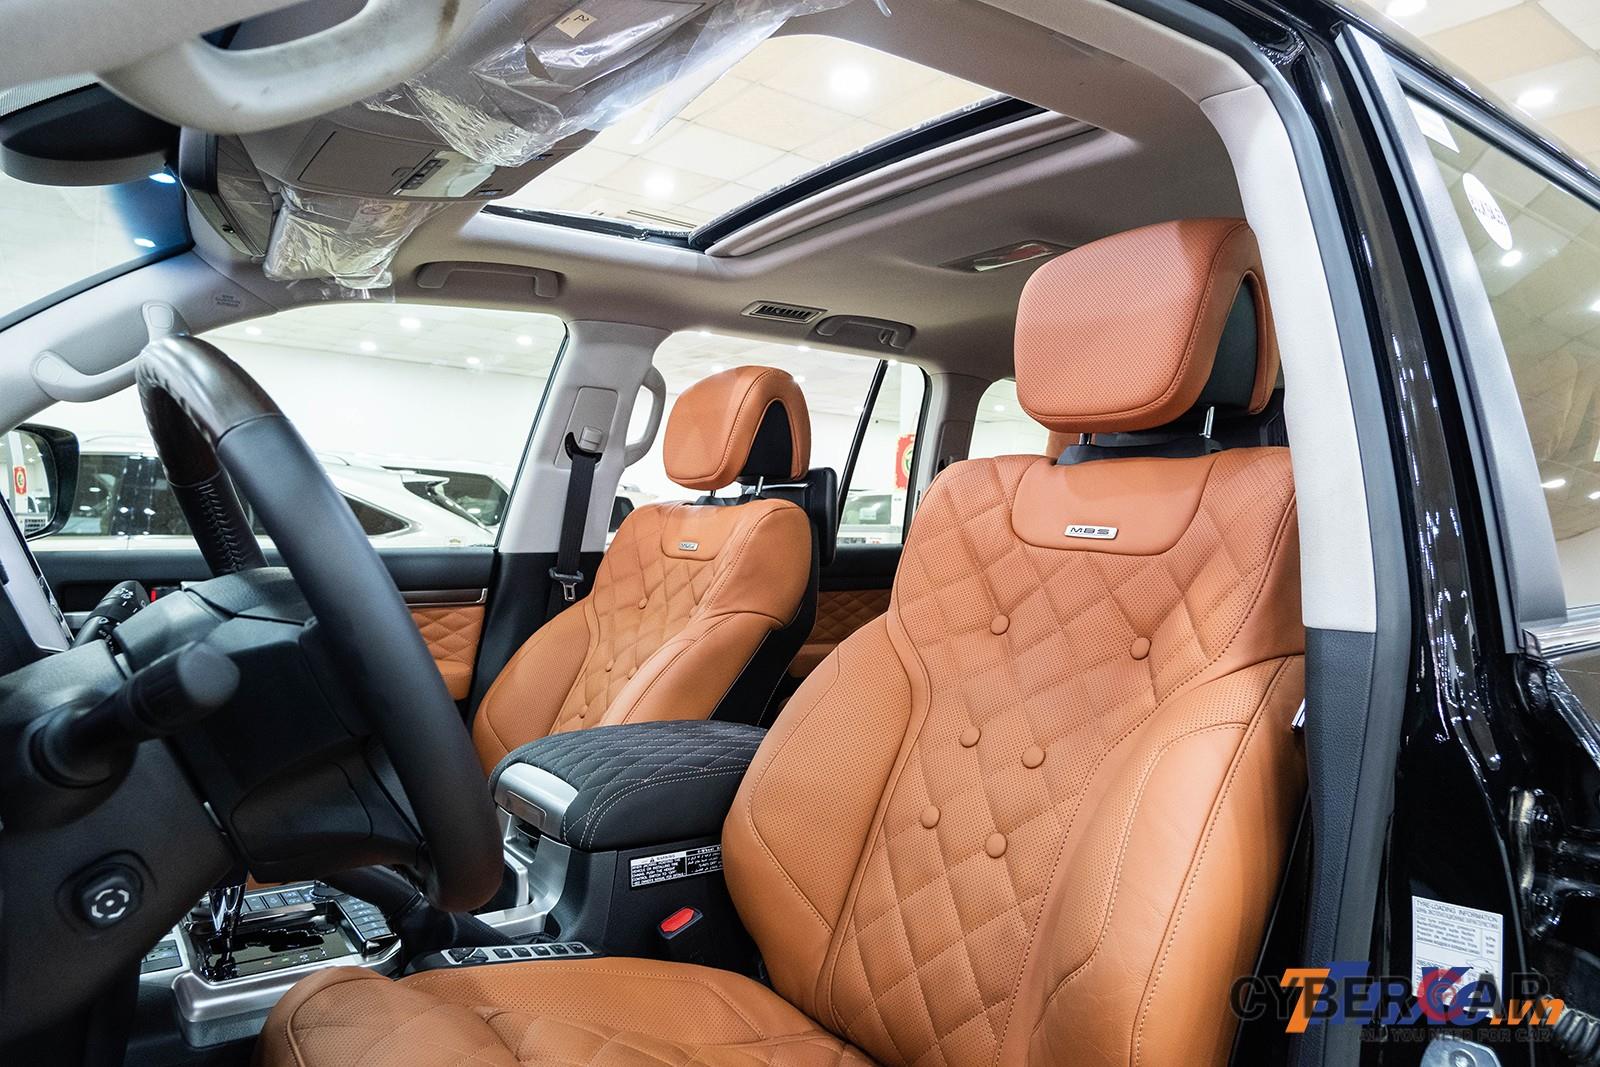 Ghế bọc da Nappa màu nâu được MBS độ cho Toyota Land Cruiser VXR được dập lỗ, thêu hình quả trám điểm xuyết bằng một số khuy tròn khá giống phong cách của những chiếc Bentley